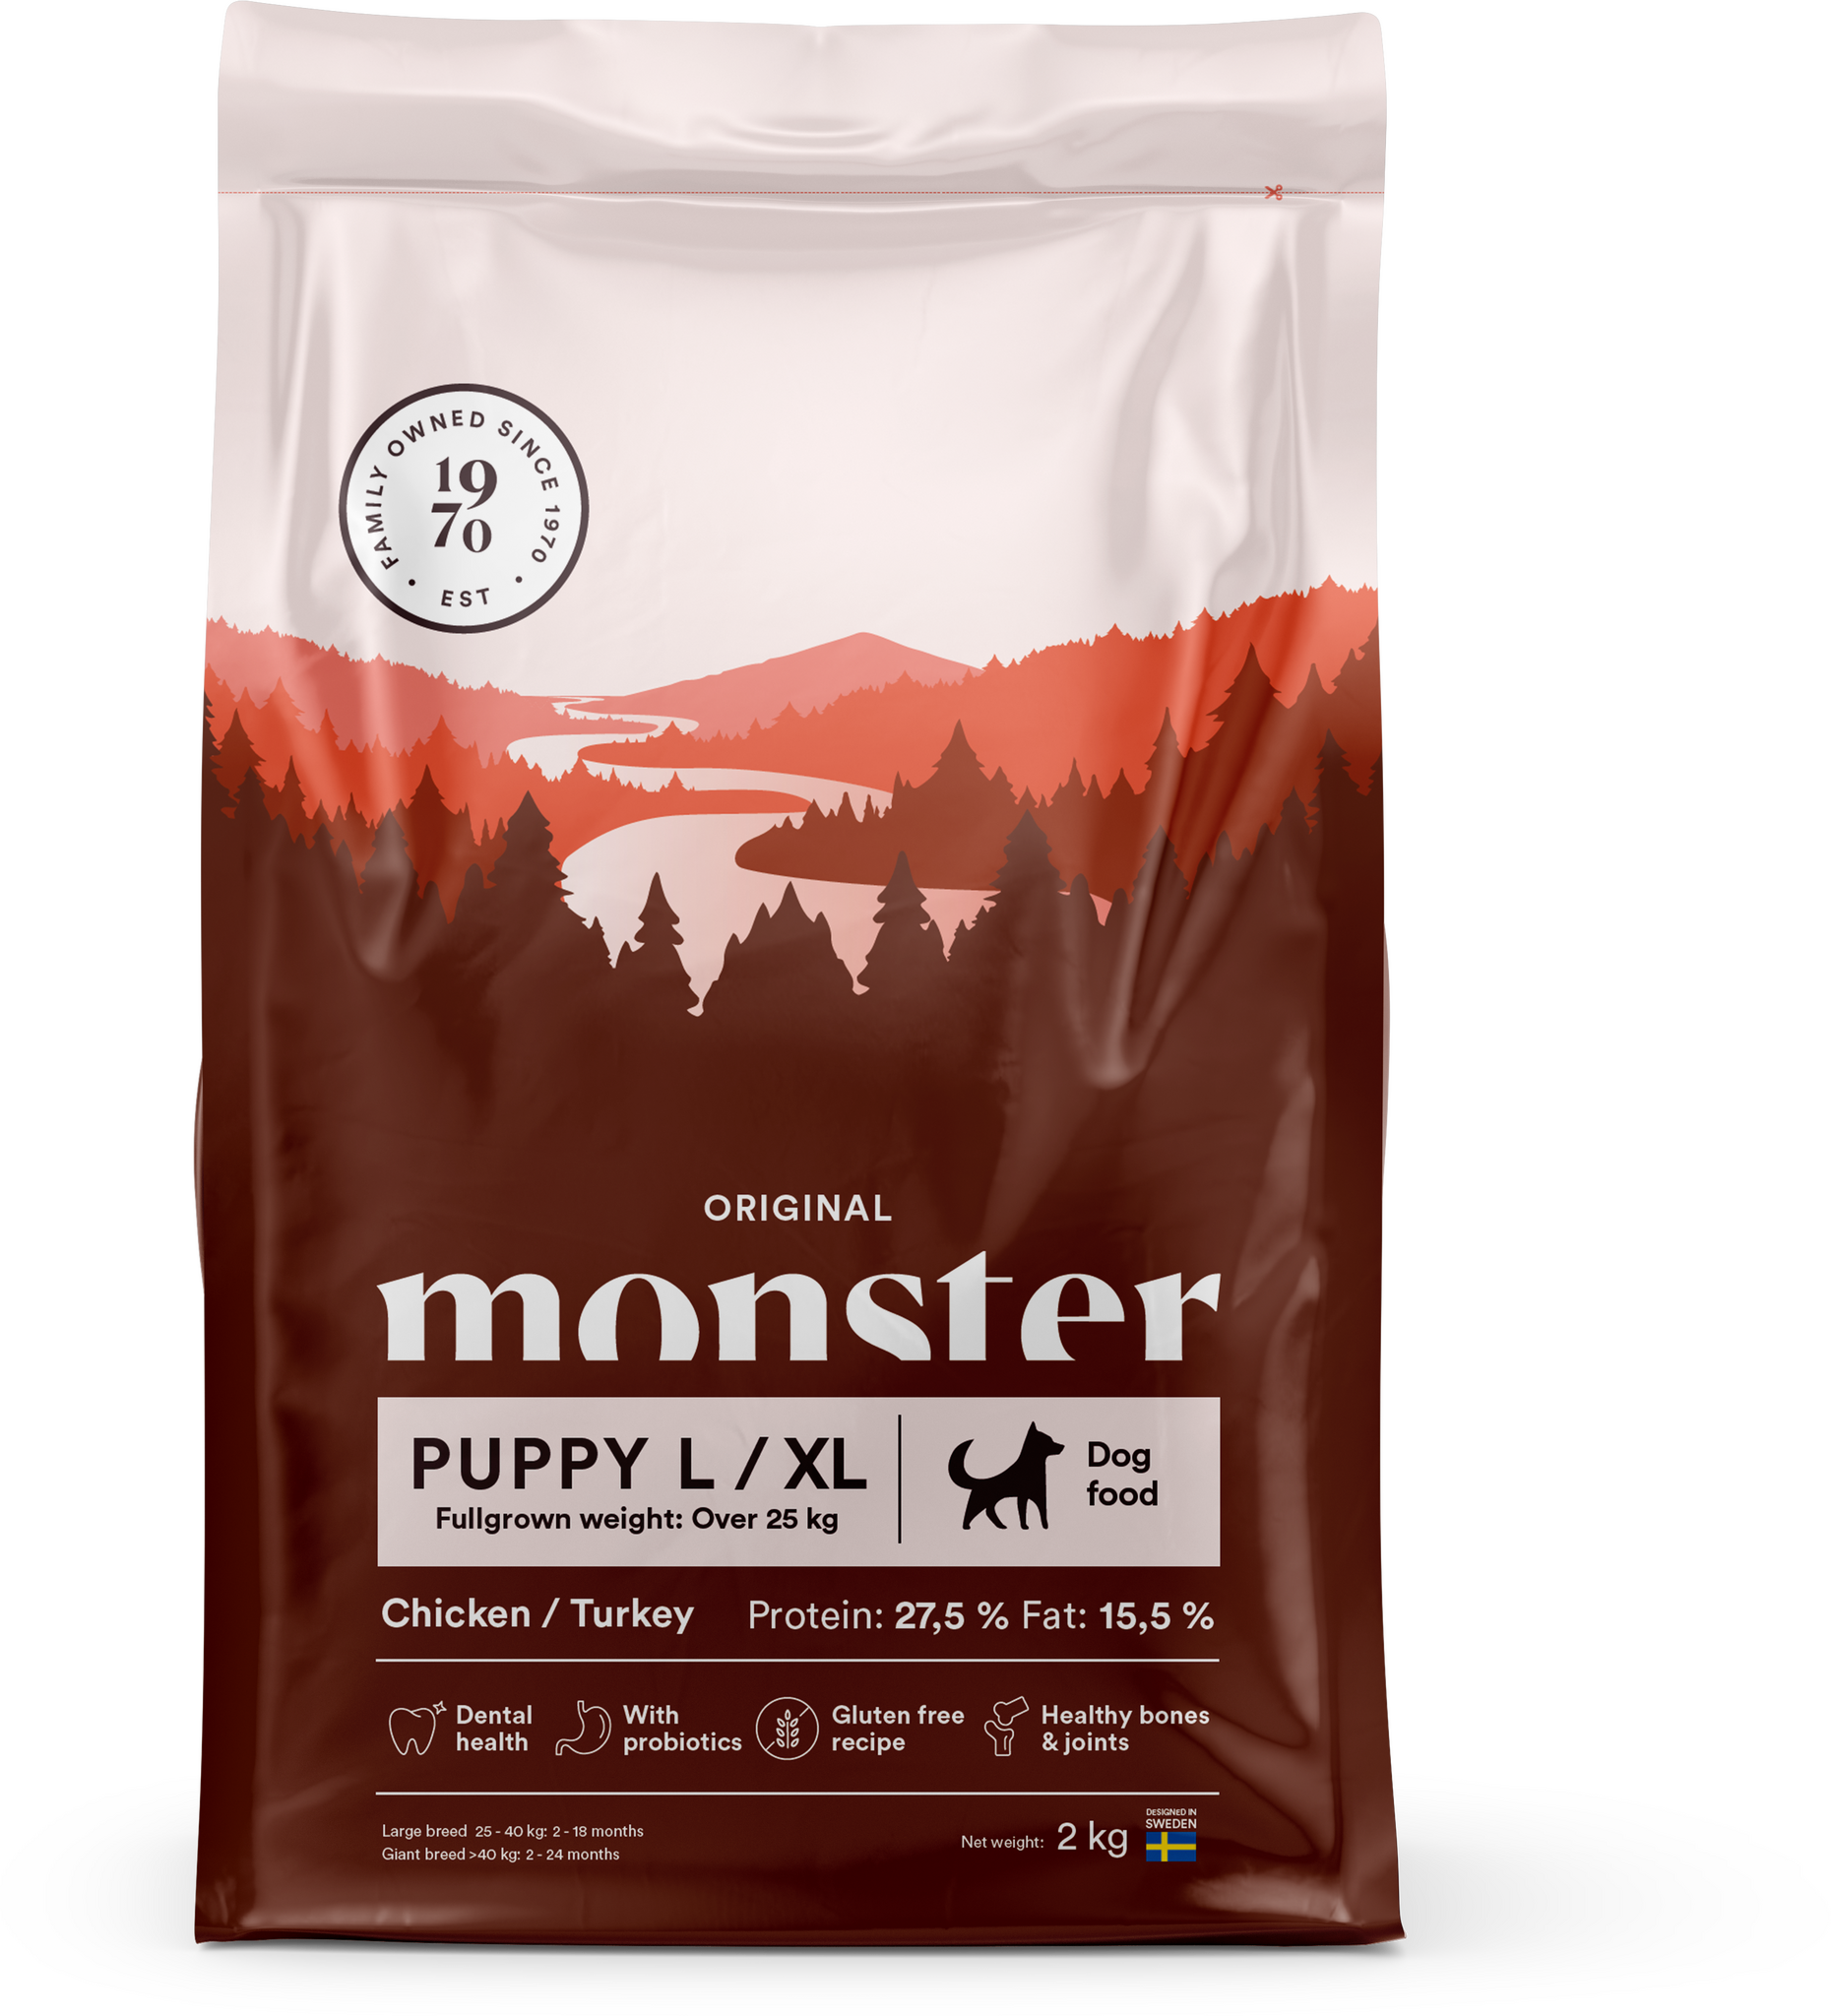 Monster Hund Original Puppy Large/ XL Chicken/ Turkey 12 kg